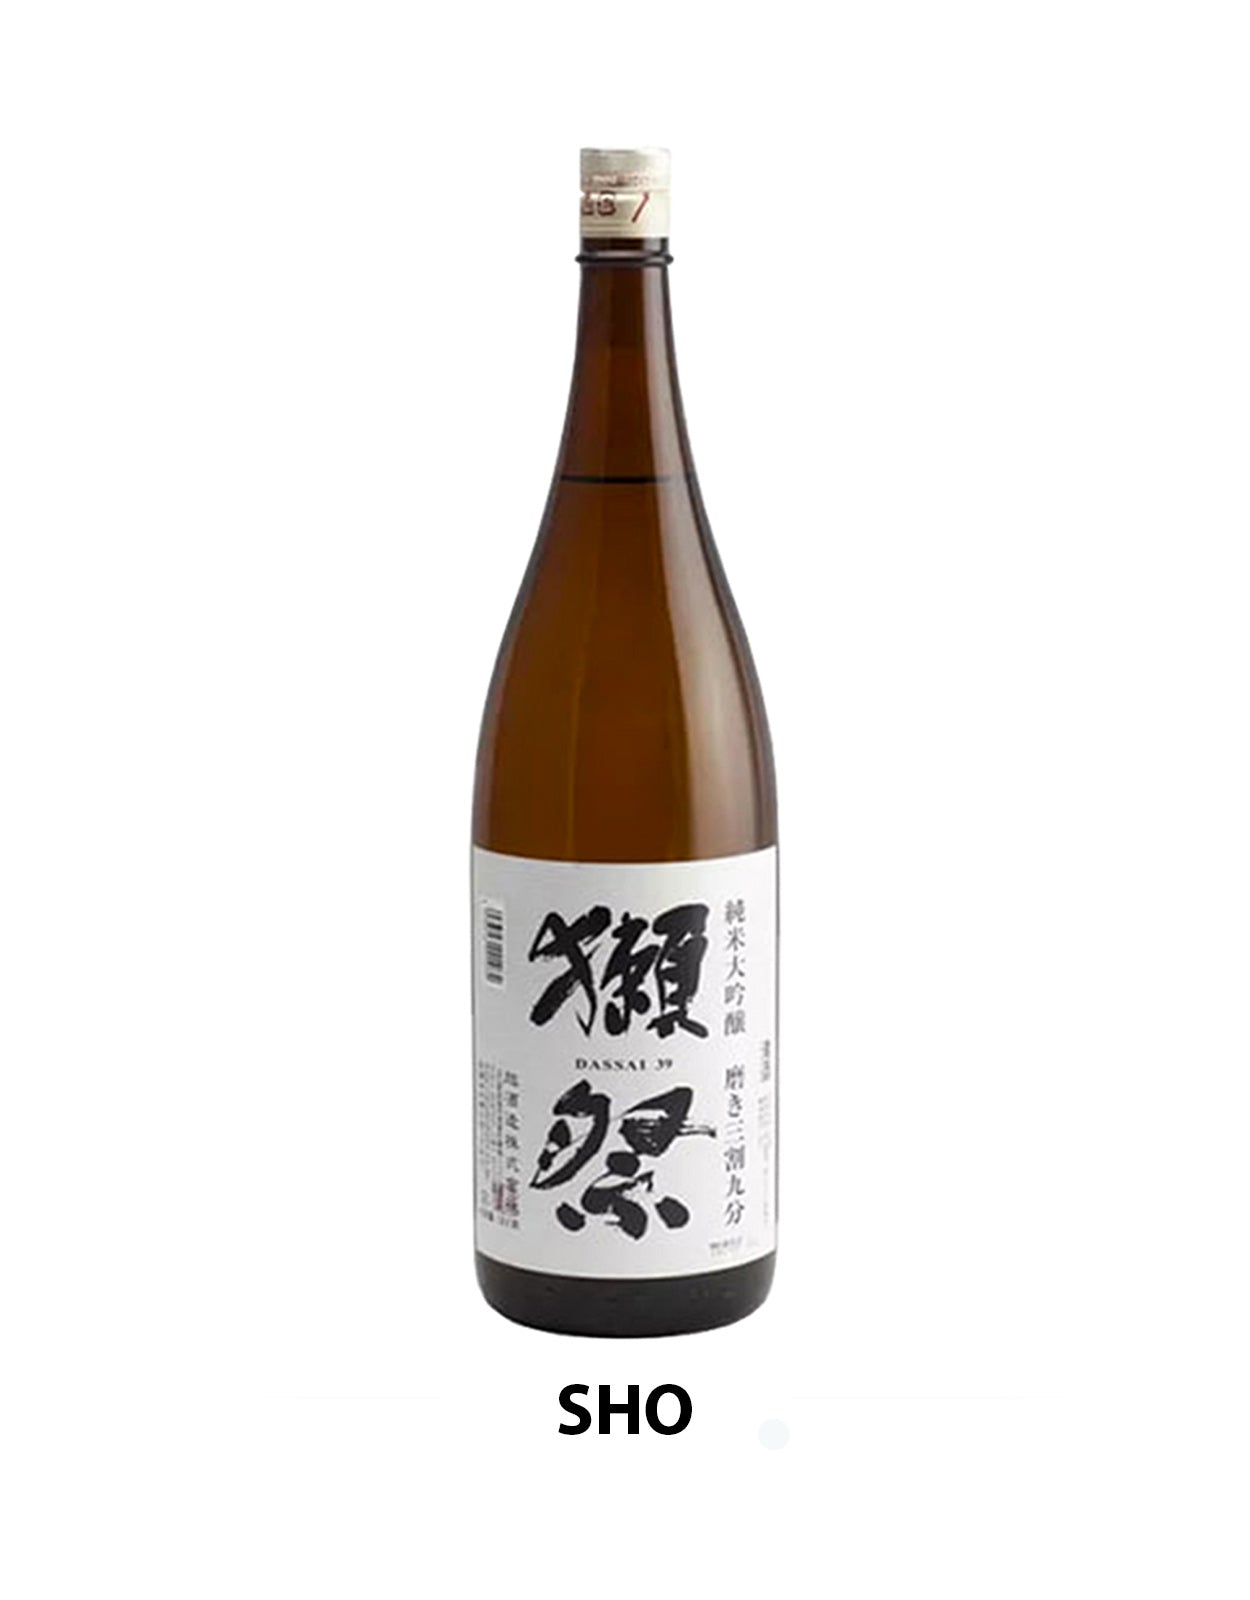 Asahi Shuzo Dassai '39' Junmai Daiginjo Sake - 1.8 Litre Bottle